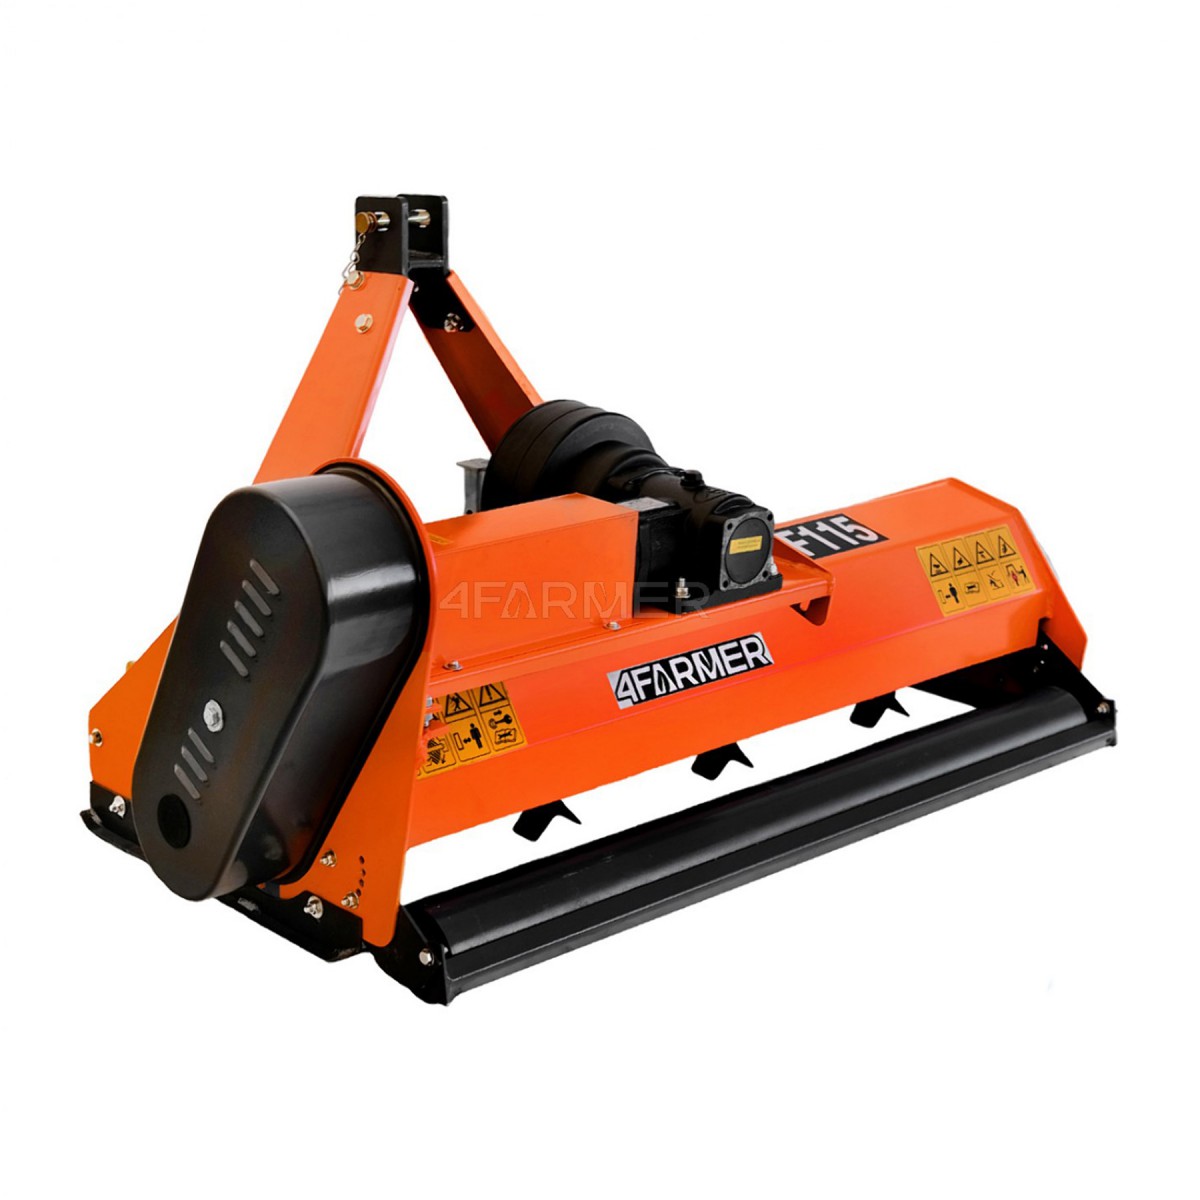 Trituradora de martillos EF 115 4FARMER - naranja